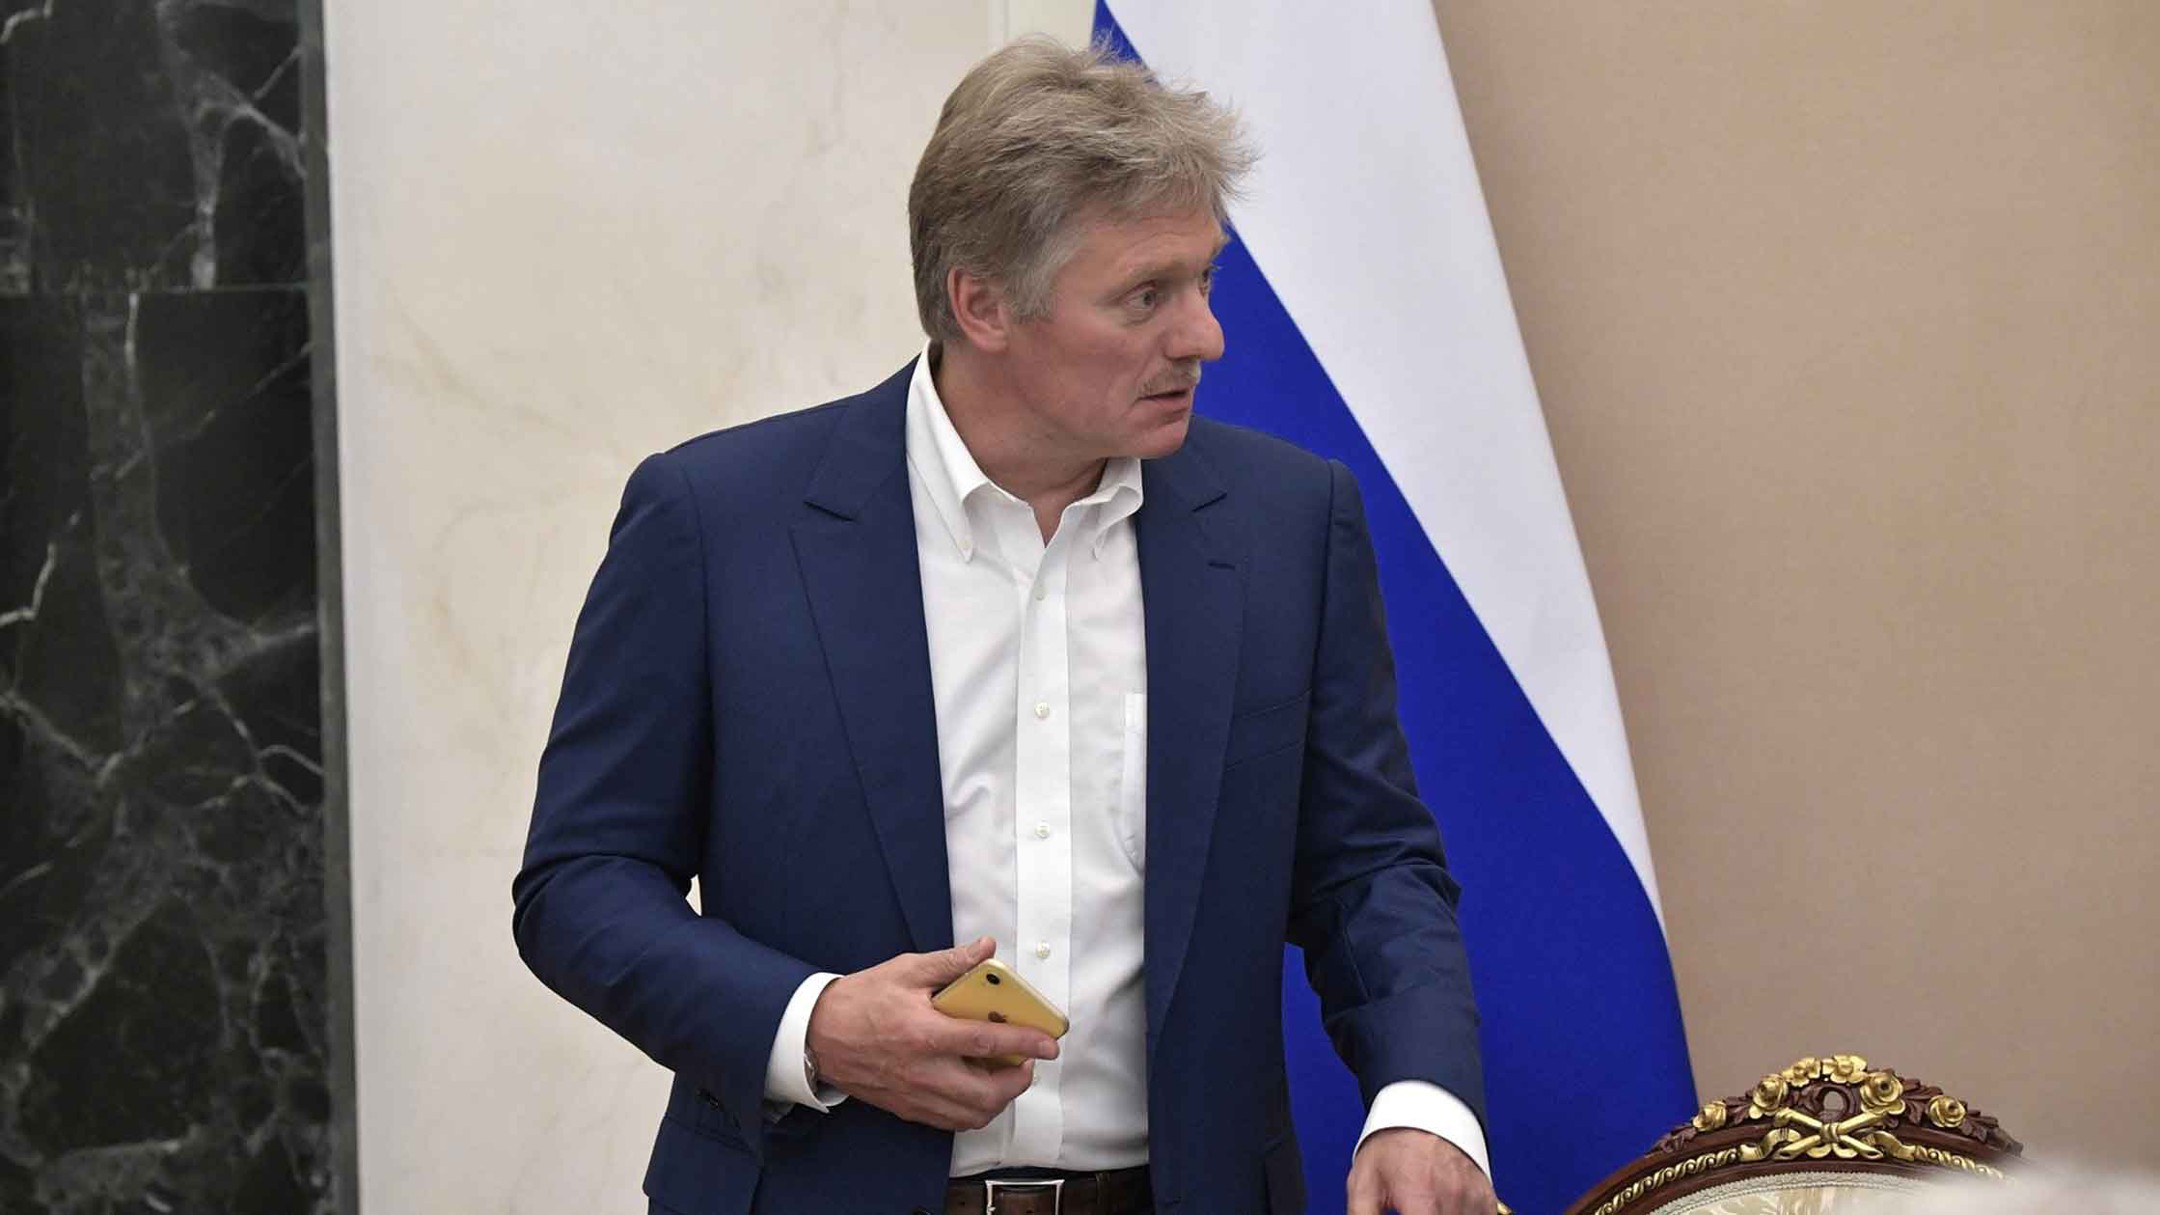 Фото: © GLOBAL LOOK press / Kremlin Pool